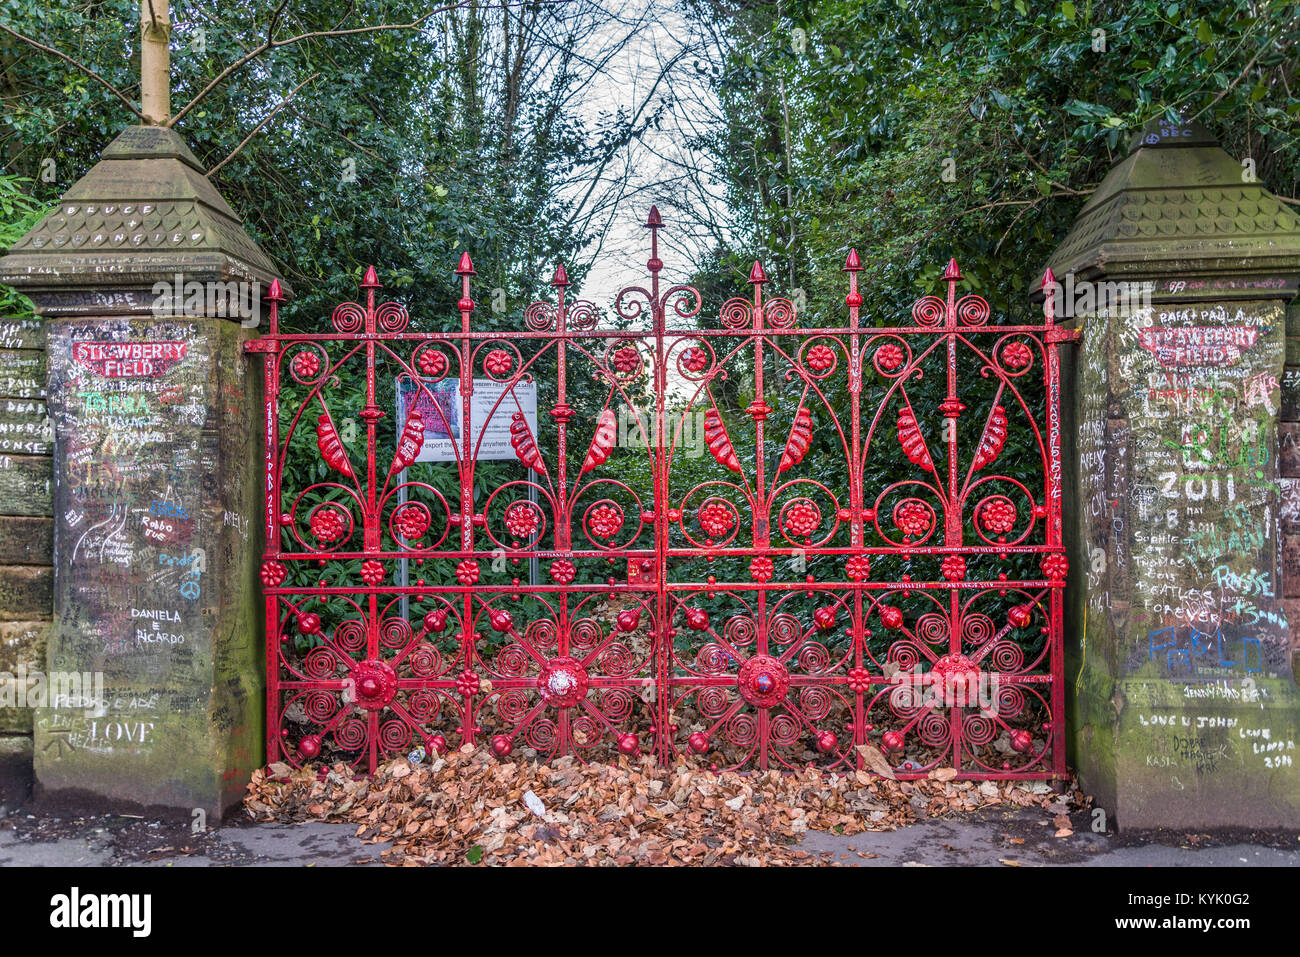 Cancelli di ingresso a Strawberry Fields, la fonte di ispirazione per una canzone dei Beatles Strawberry Fields Forever. Foto Stock